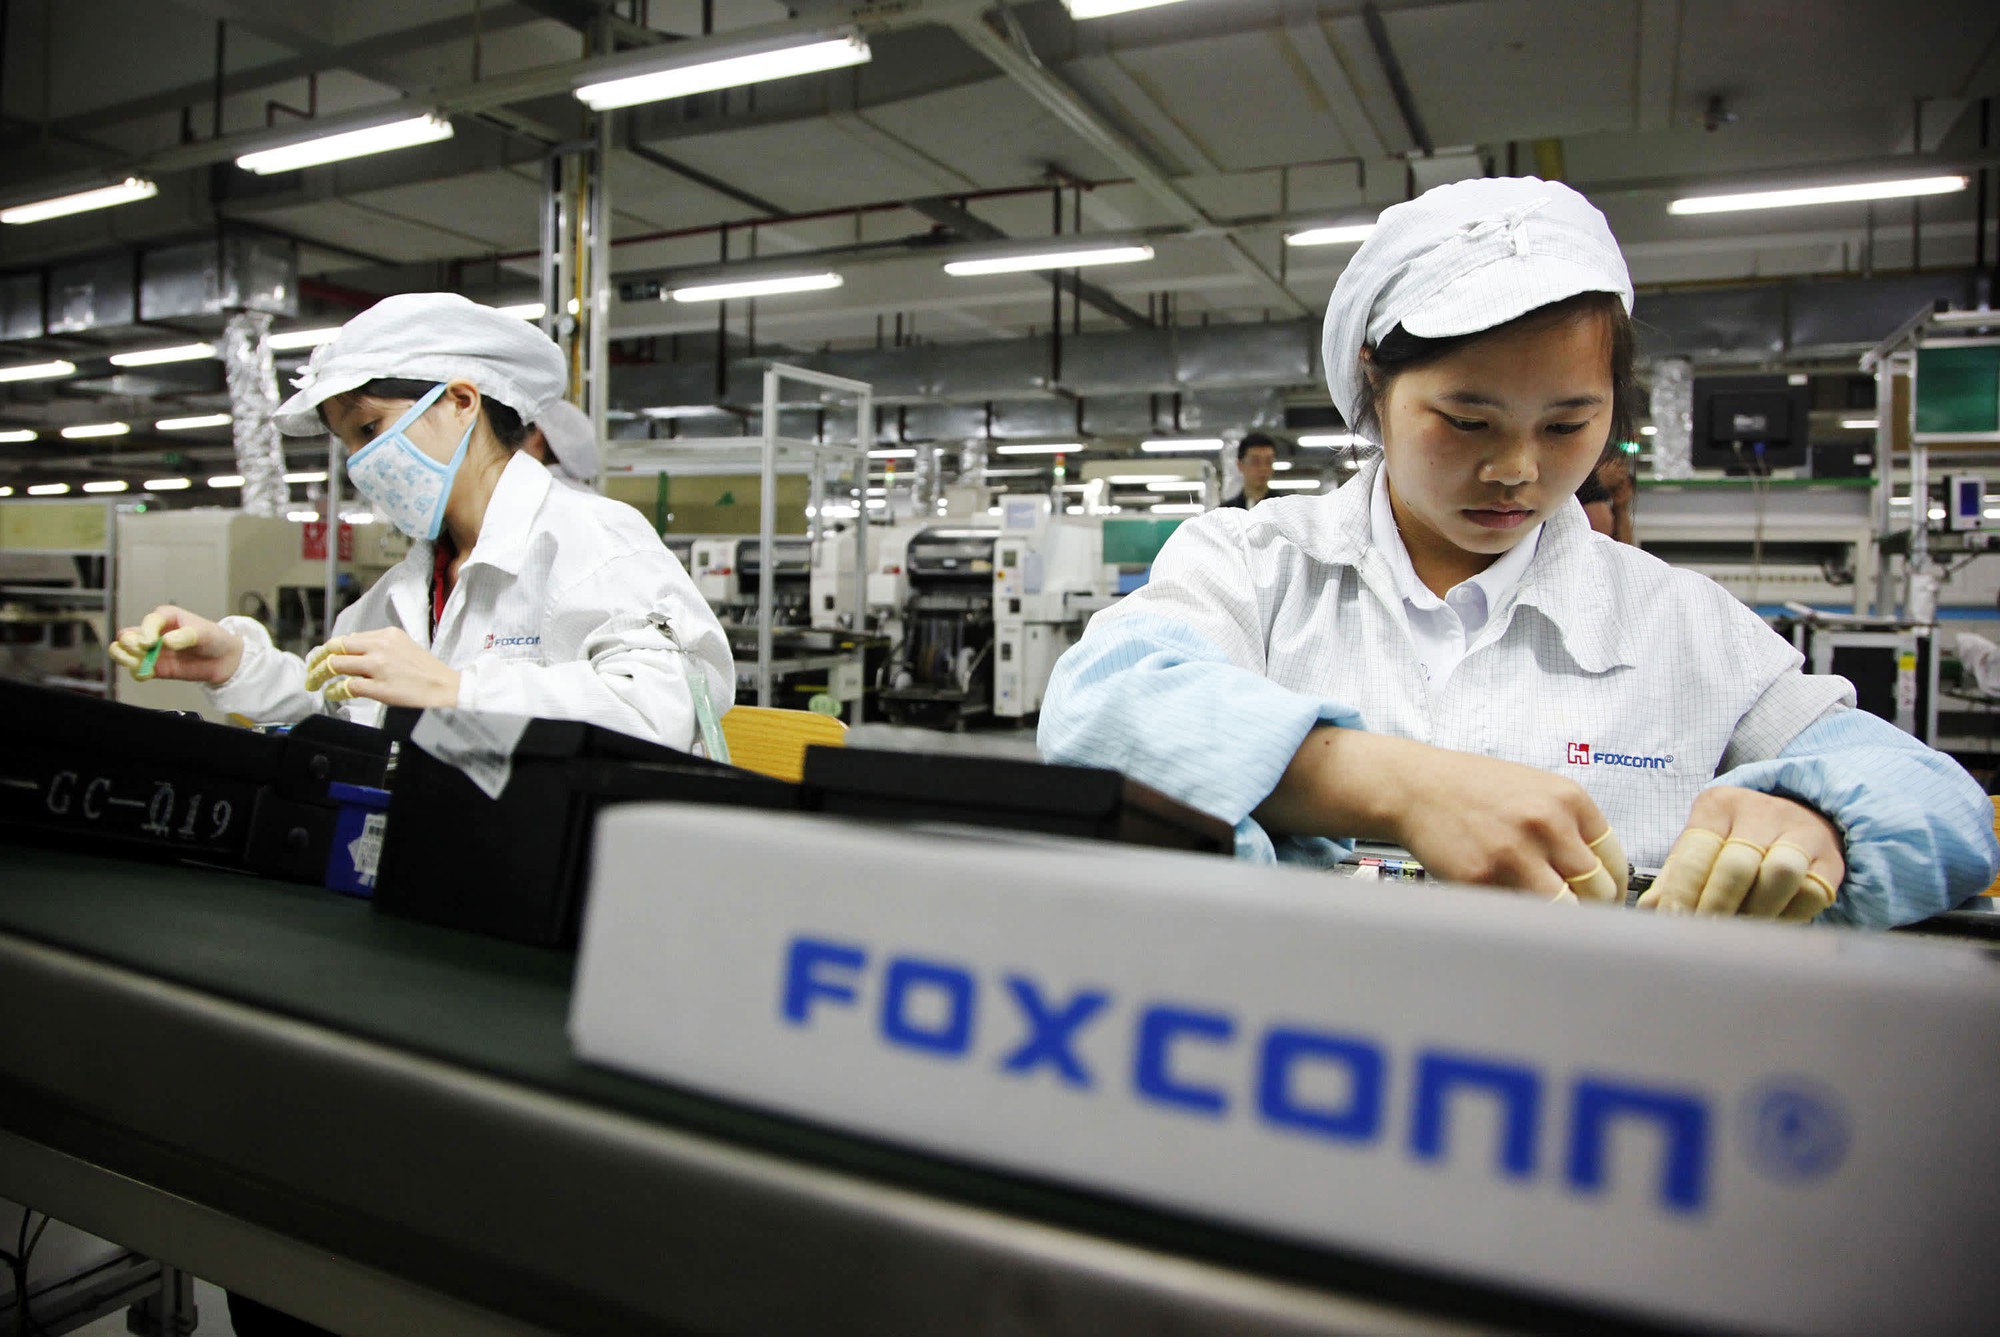 Giữa lúc Foxconn bị điều tra, người Trung Quốc lại nói về &quot;miếng ăn&quot; và &quot;sợi tóc khó xơi&quot;? - Ảnh 3.